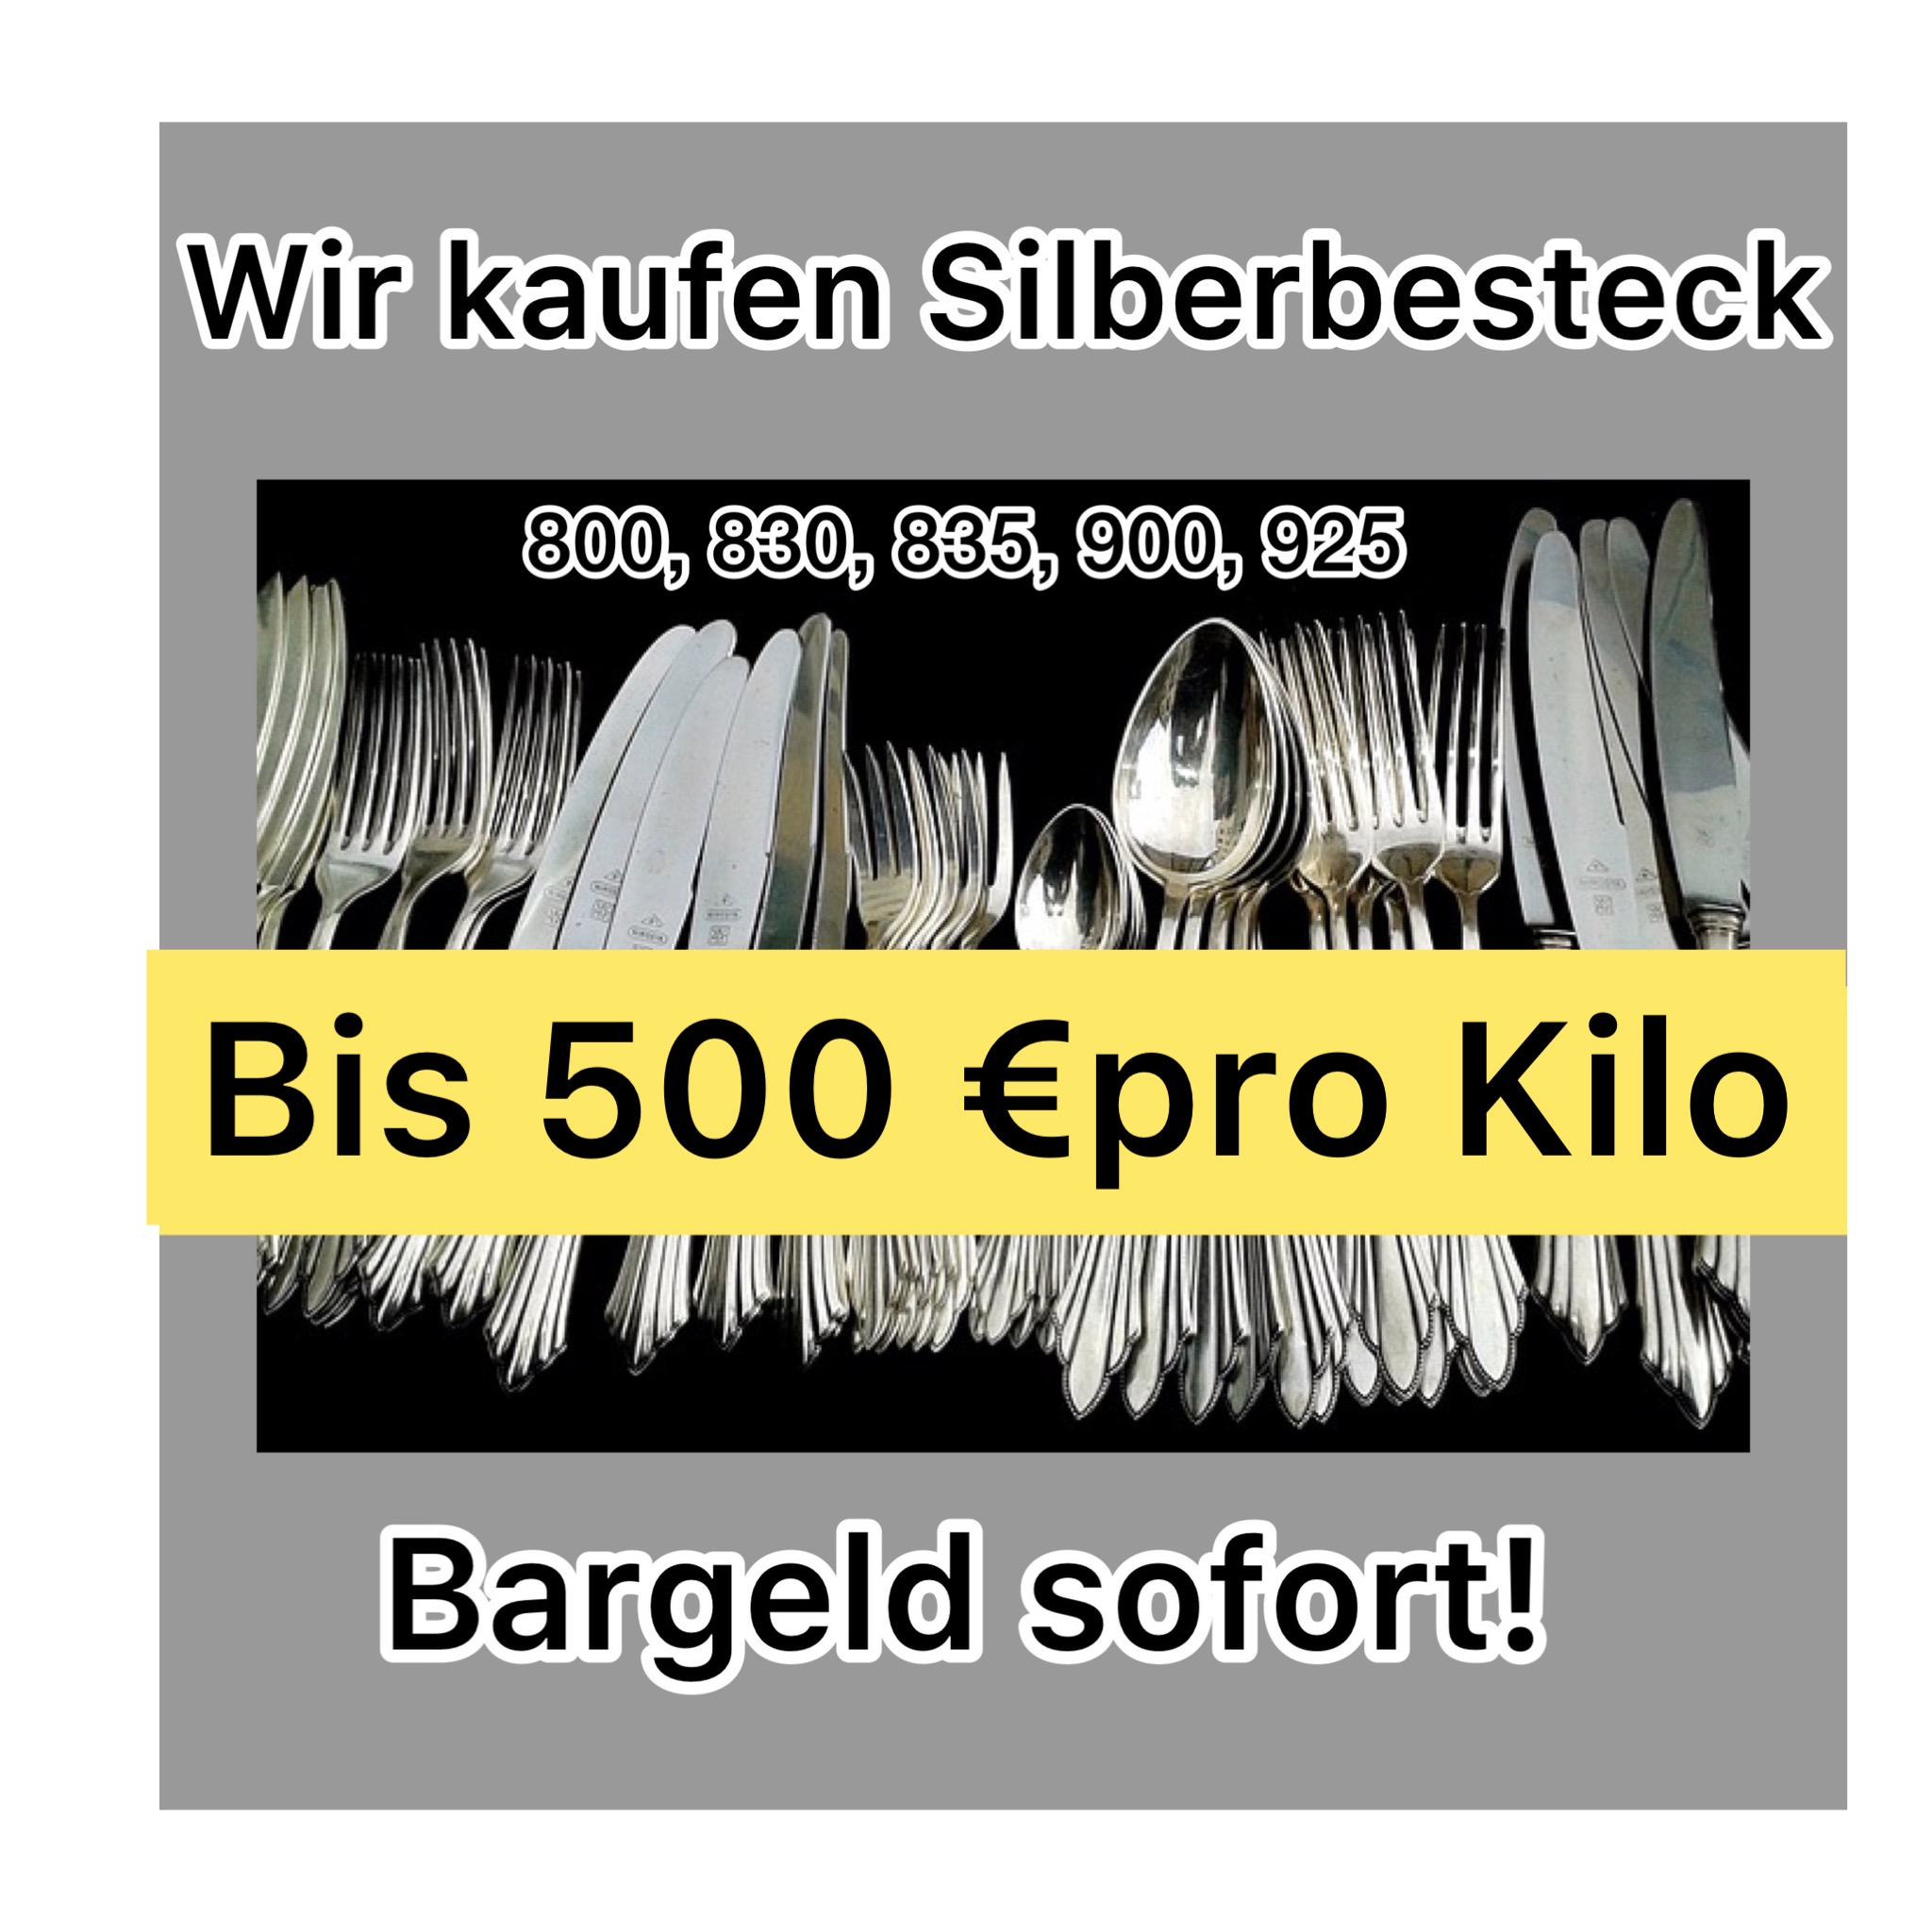 Silberbesteck verkaufen bis 500 Euro das Kilogramm.
Wir kaufen jedes Silberbesteck zum Beispiel 60er 90er 100er 800er 835er und viele mehr.